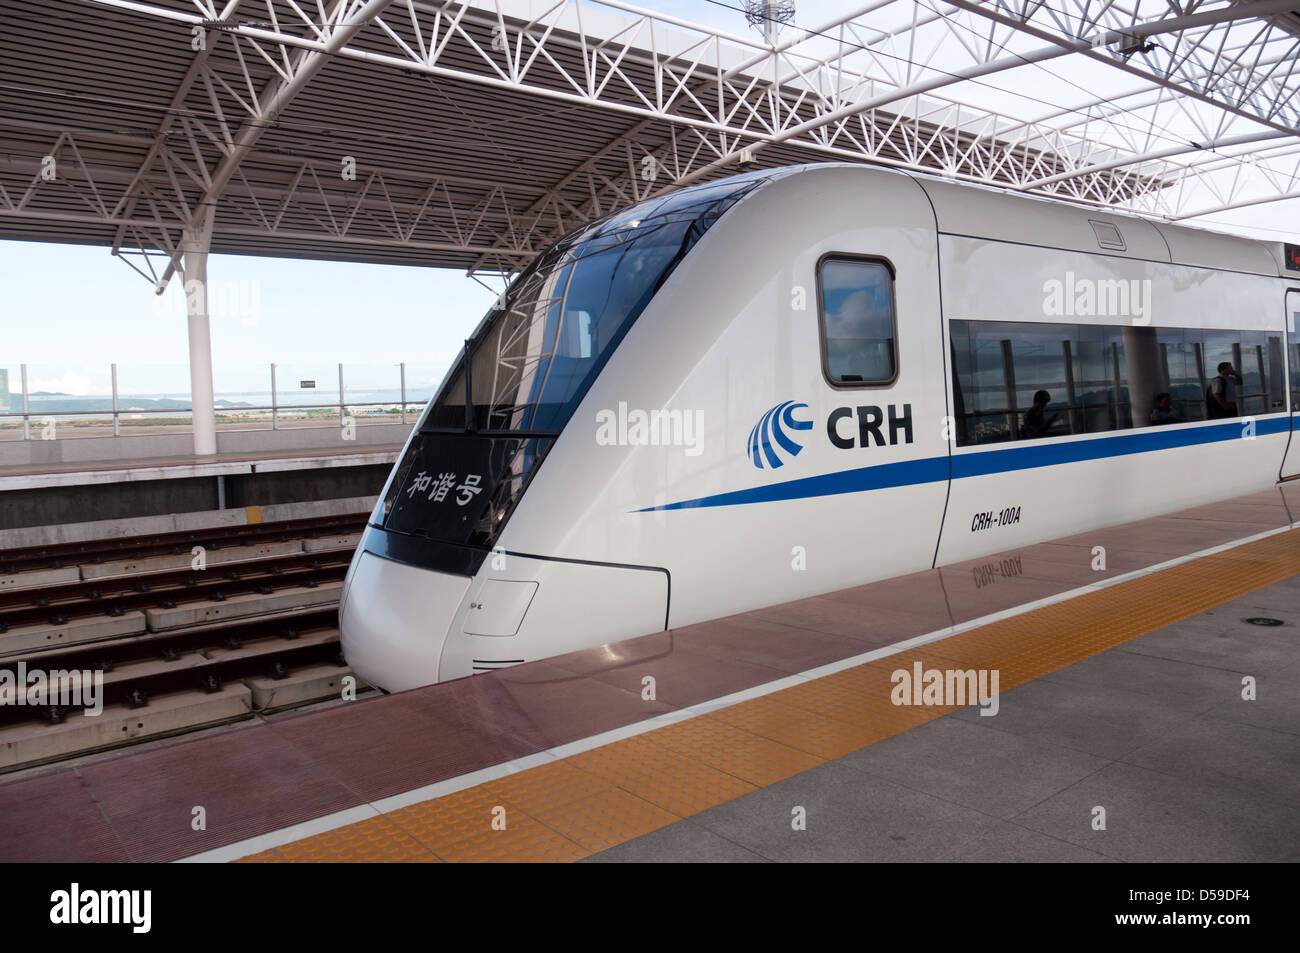 Chinese high speed train. Stock Photo